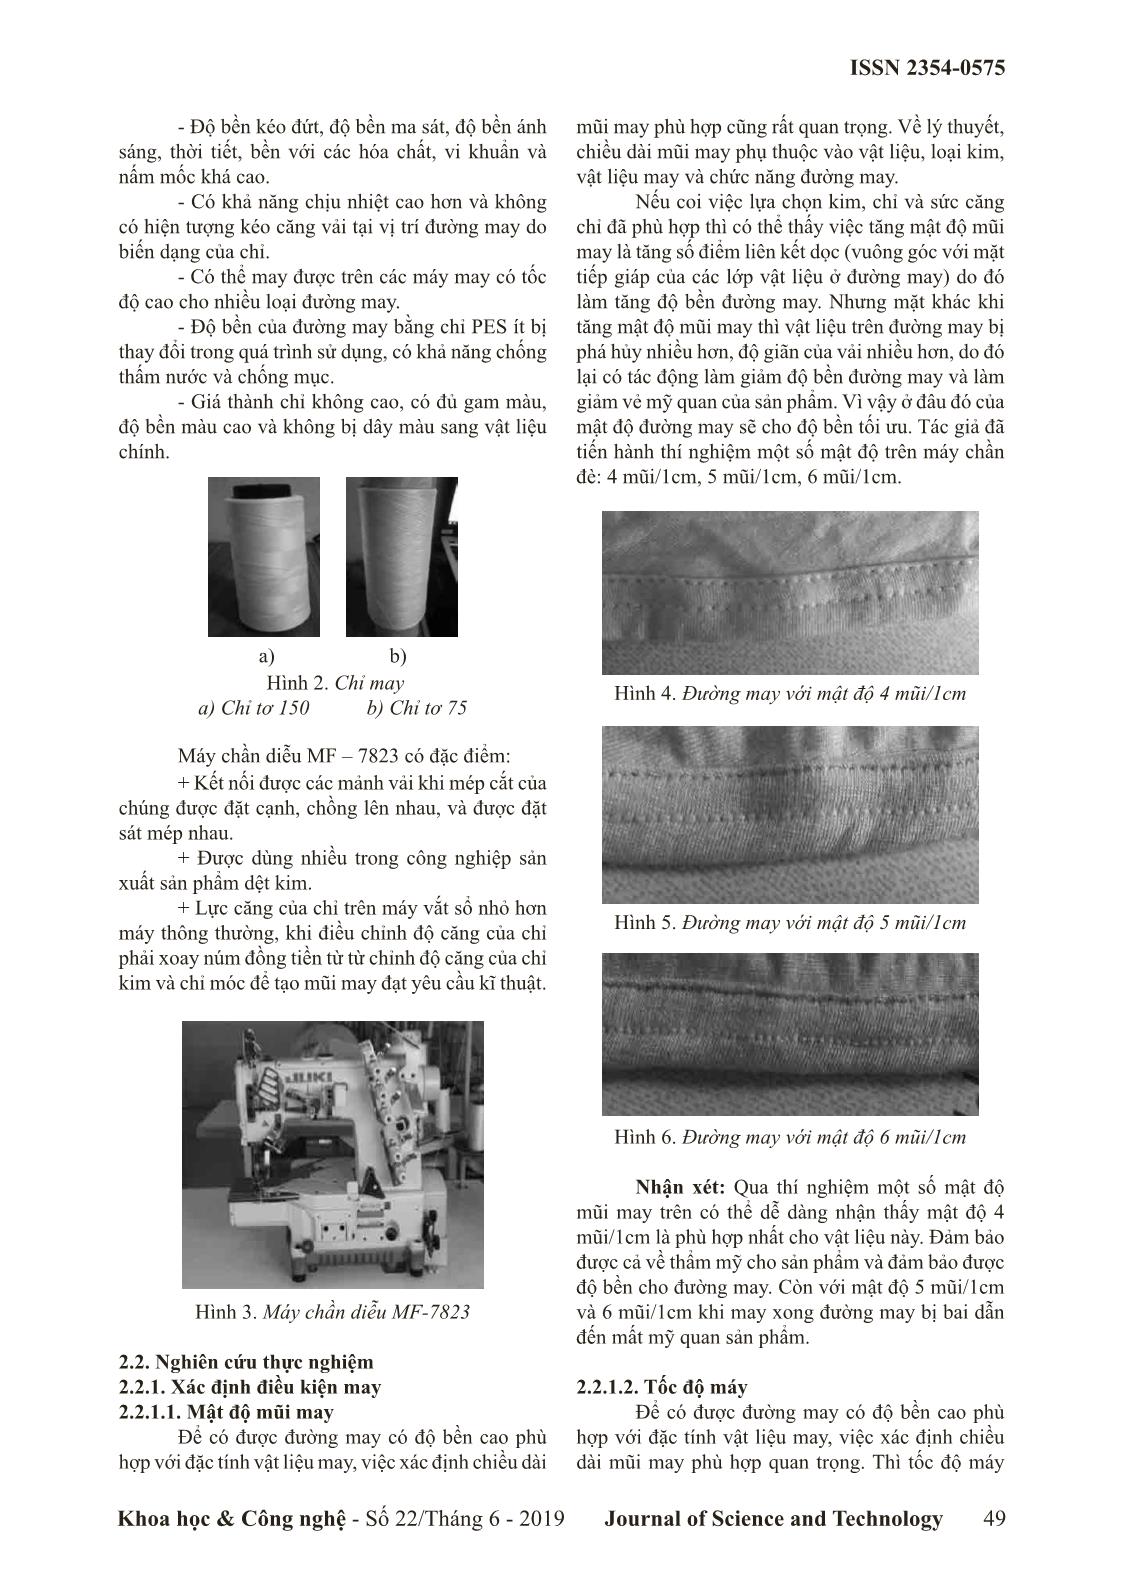 Nghiên cứu điều kiện công nghệ may sản phẩm từ vải dệt kim cotton co giãn trên máy chần diễu MF - 7823 trang 2